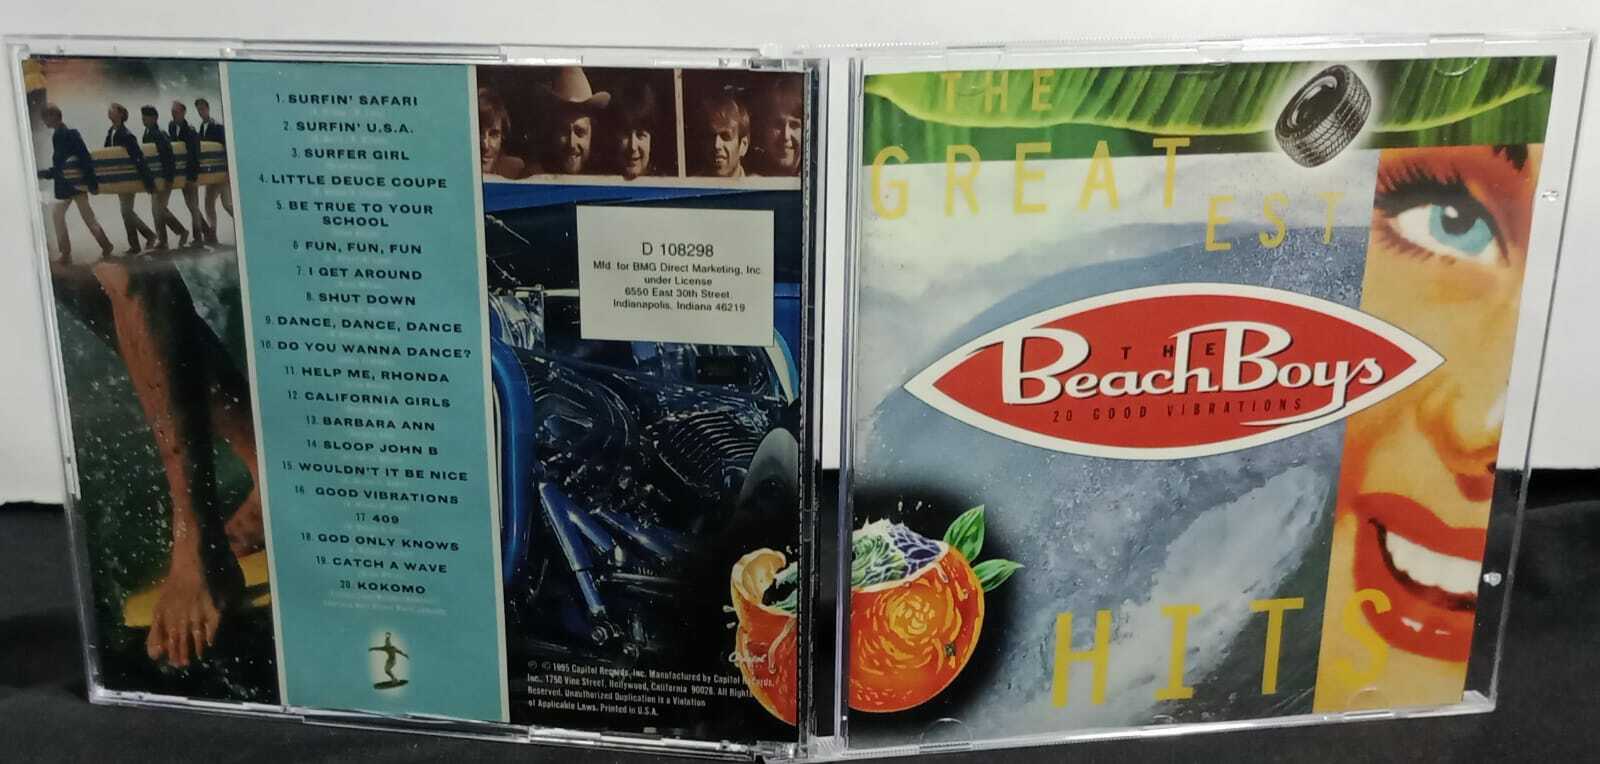 CD - Beach Boys The - 20 good vibrations the greatest hits (USA)